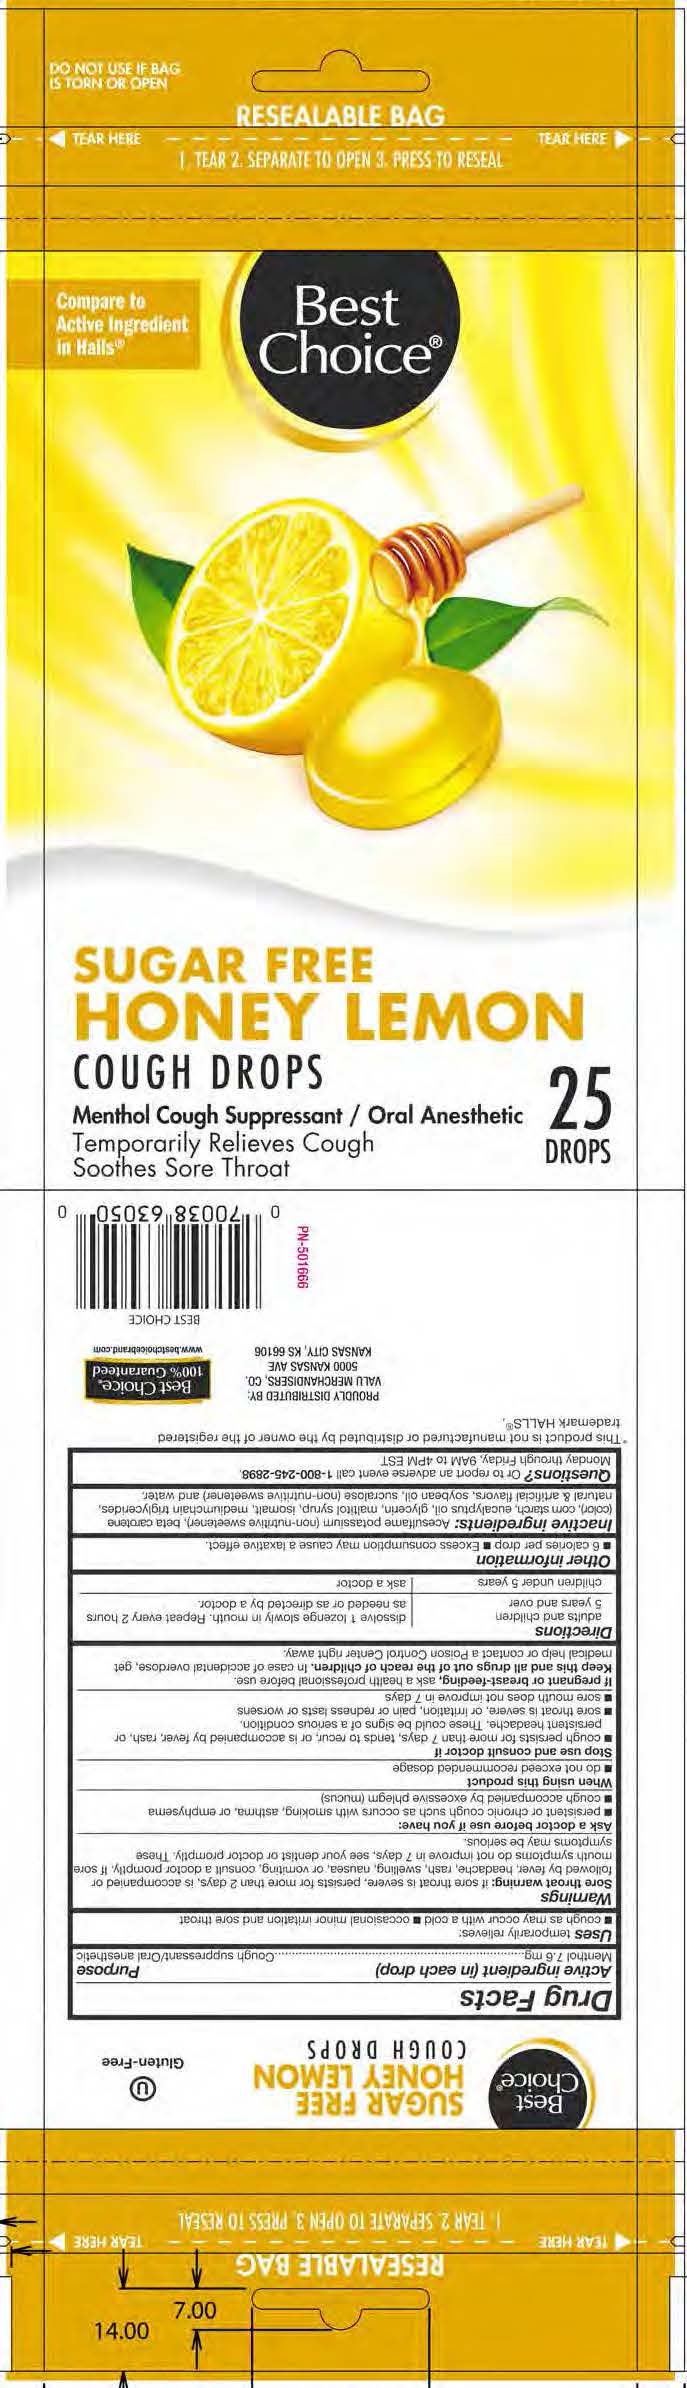 Best Choice SF Honey Lemon 25ct cough drops